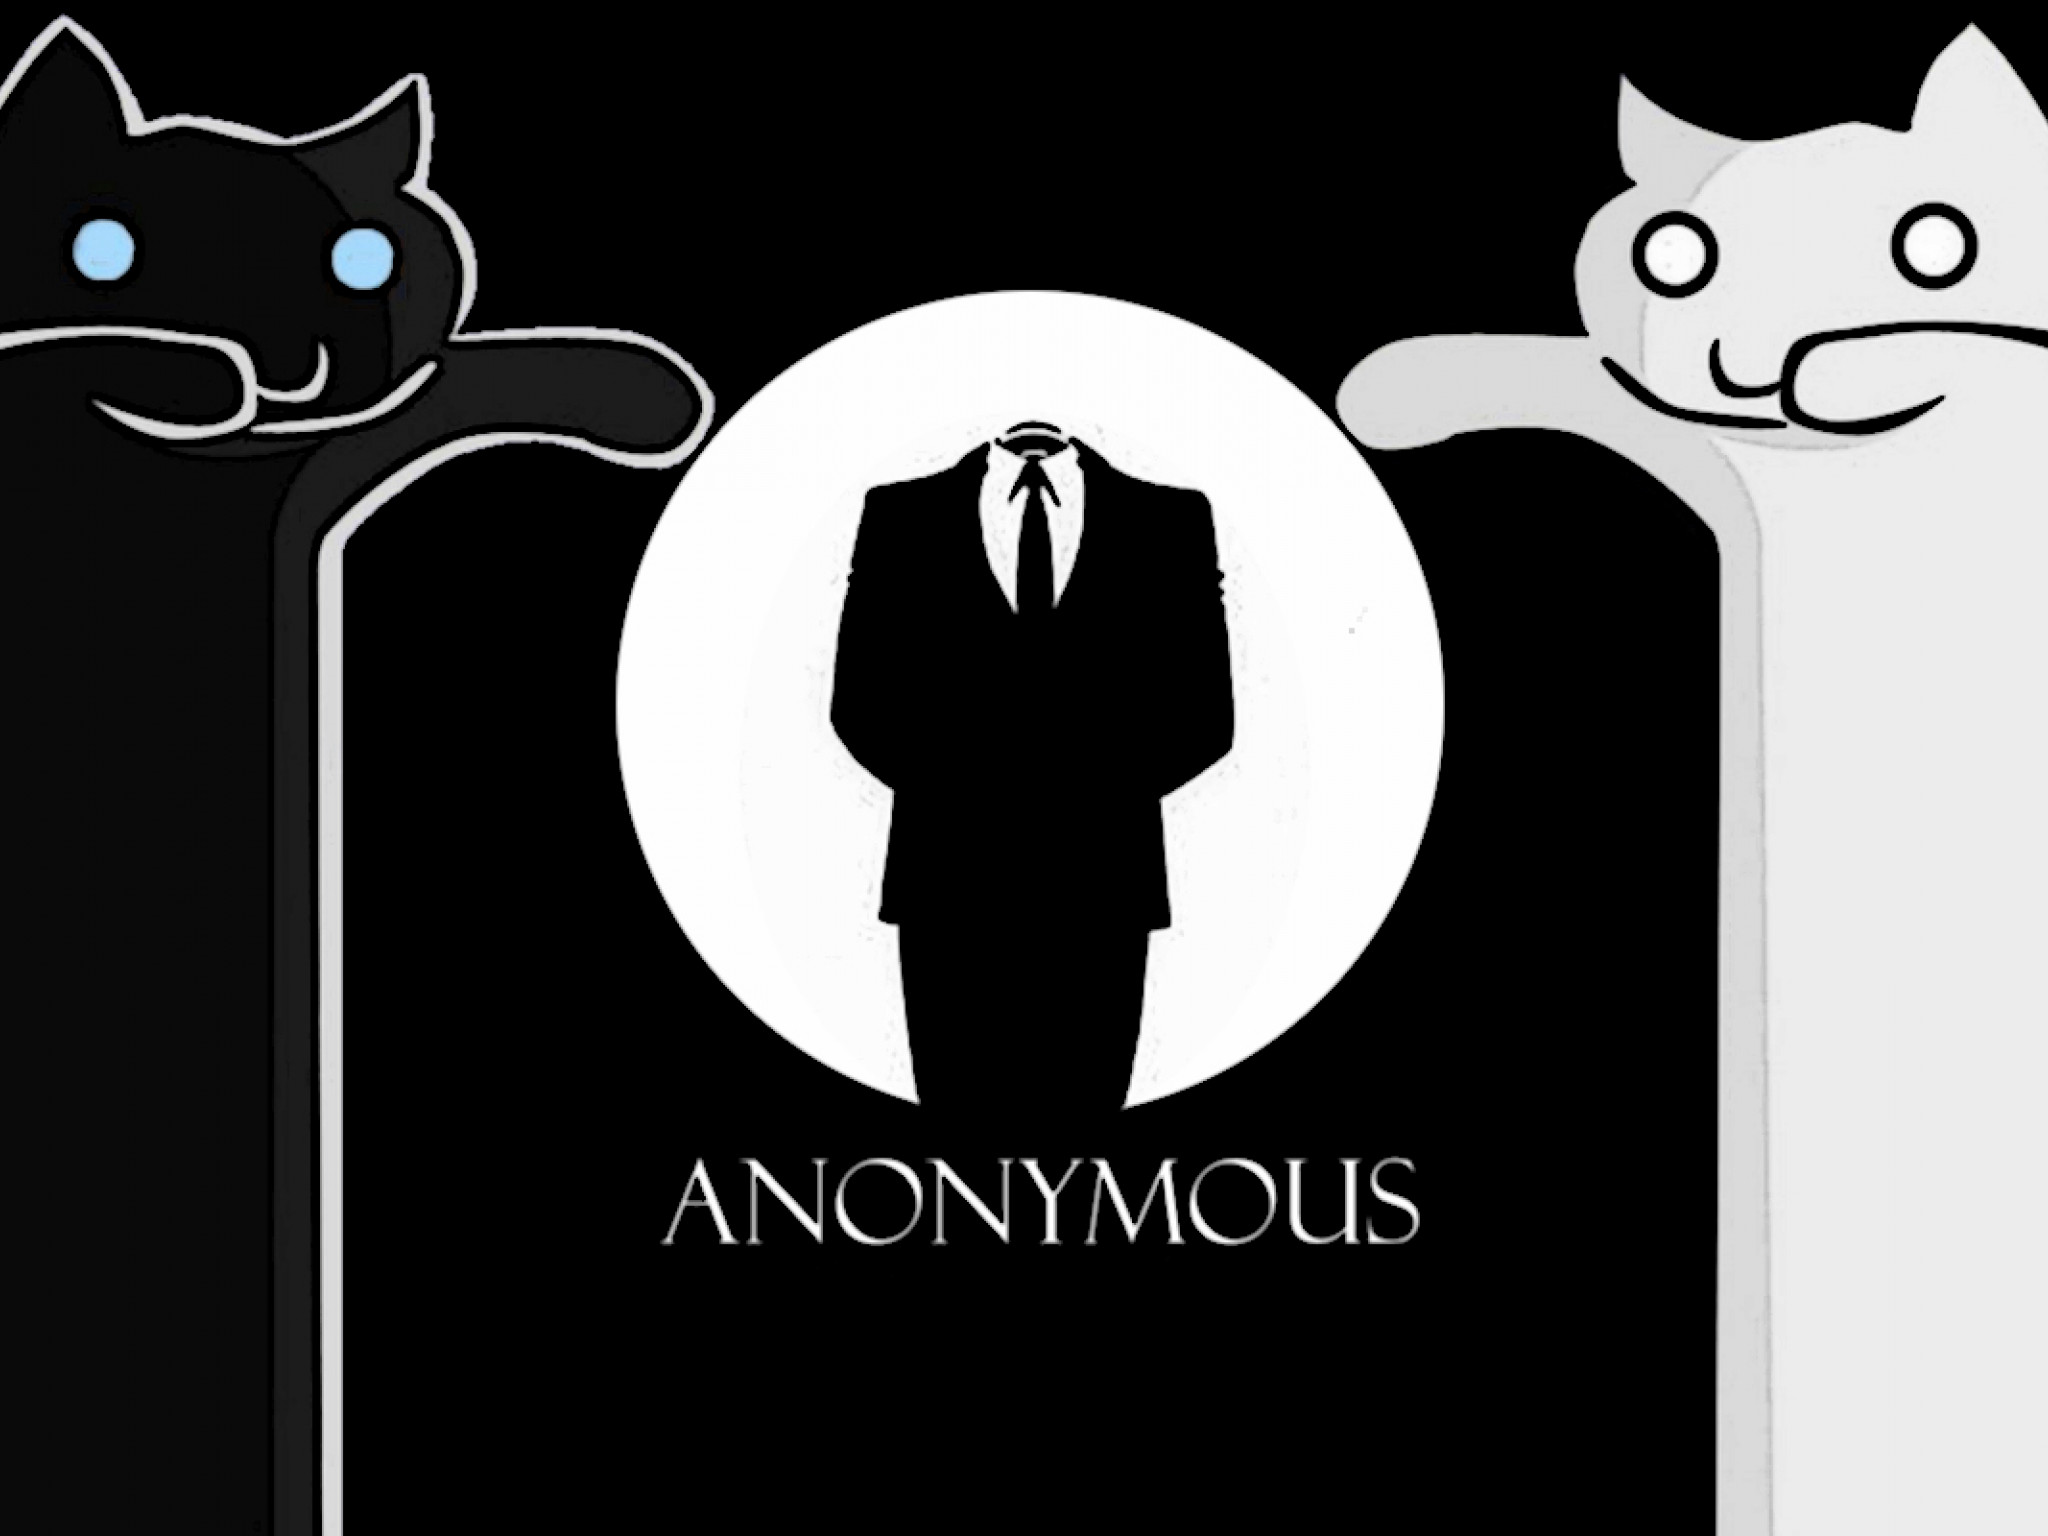 Anonimous (15).jpg